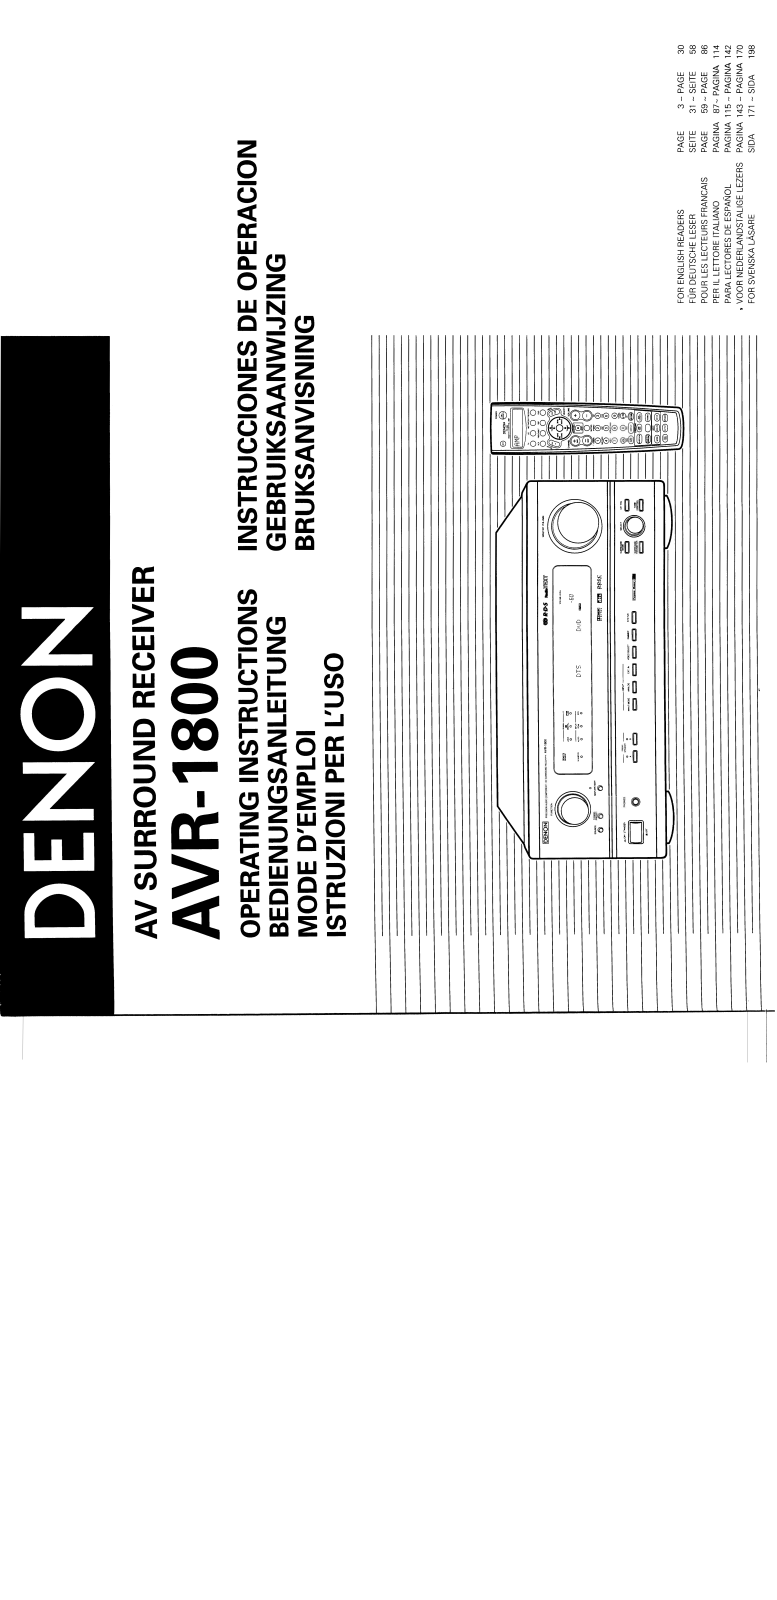 Denon AVR-1800 Owner's Manual